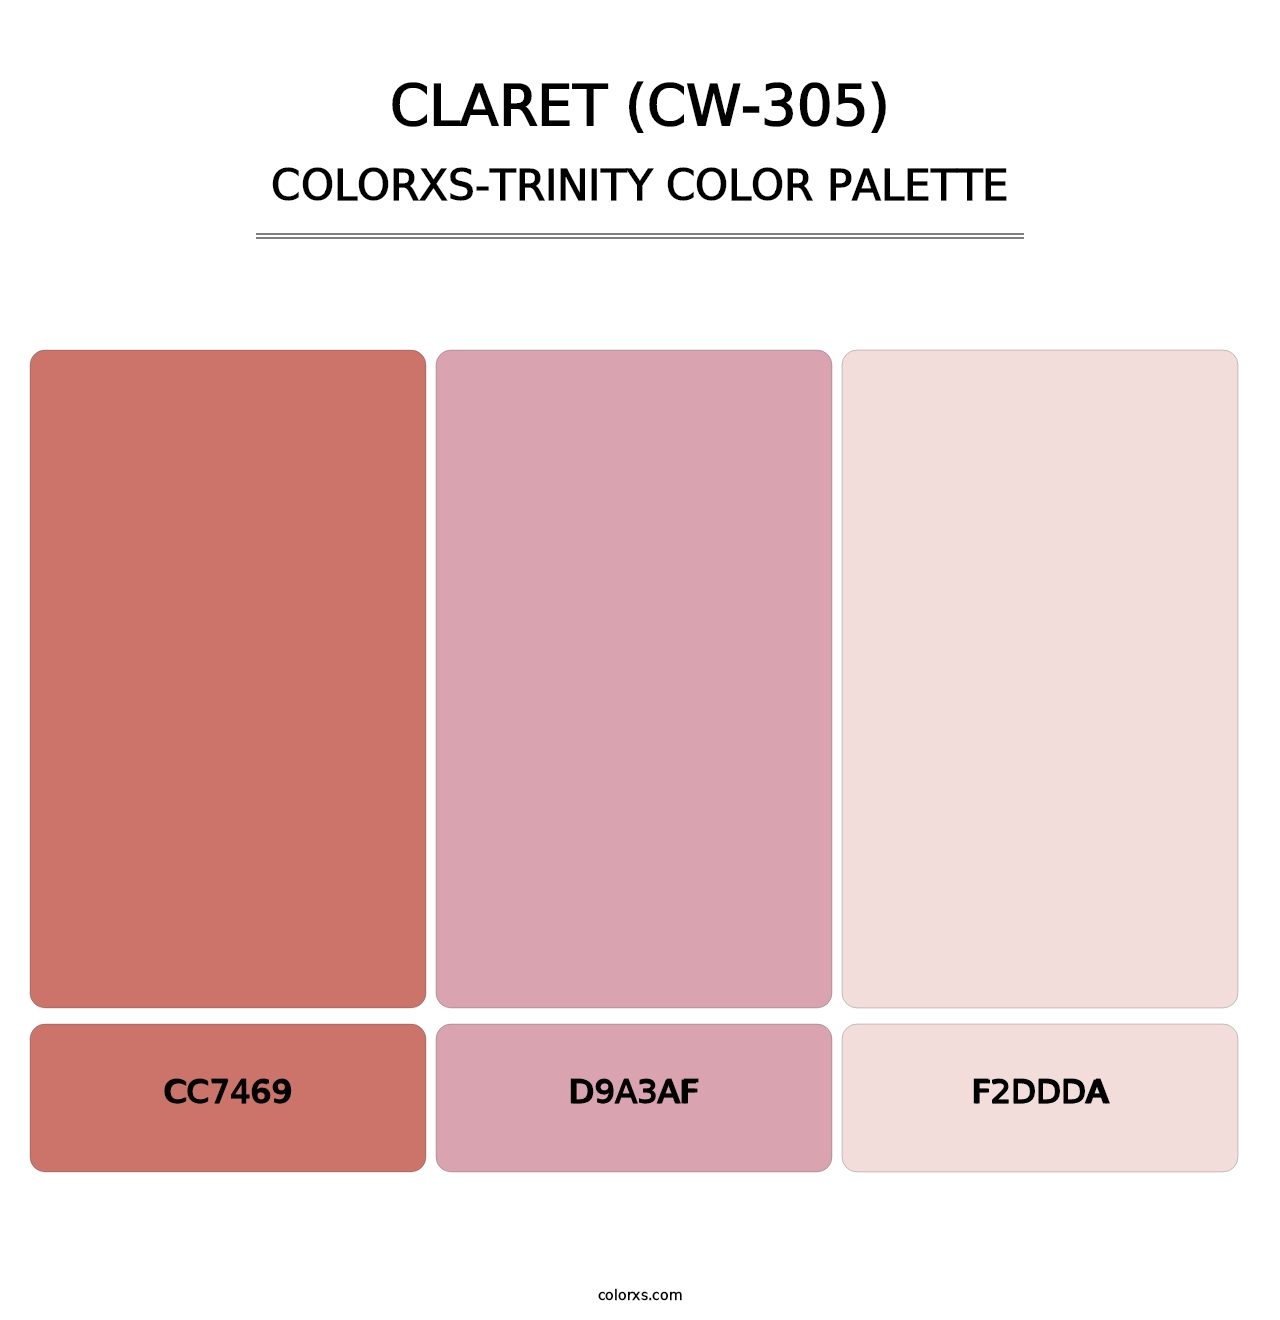 Claret (CW-305) - Colorxs Trinity Palette